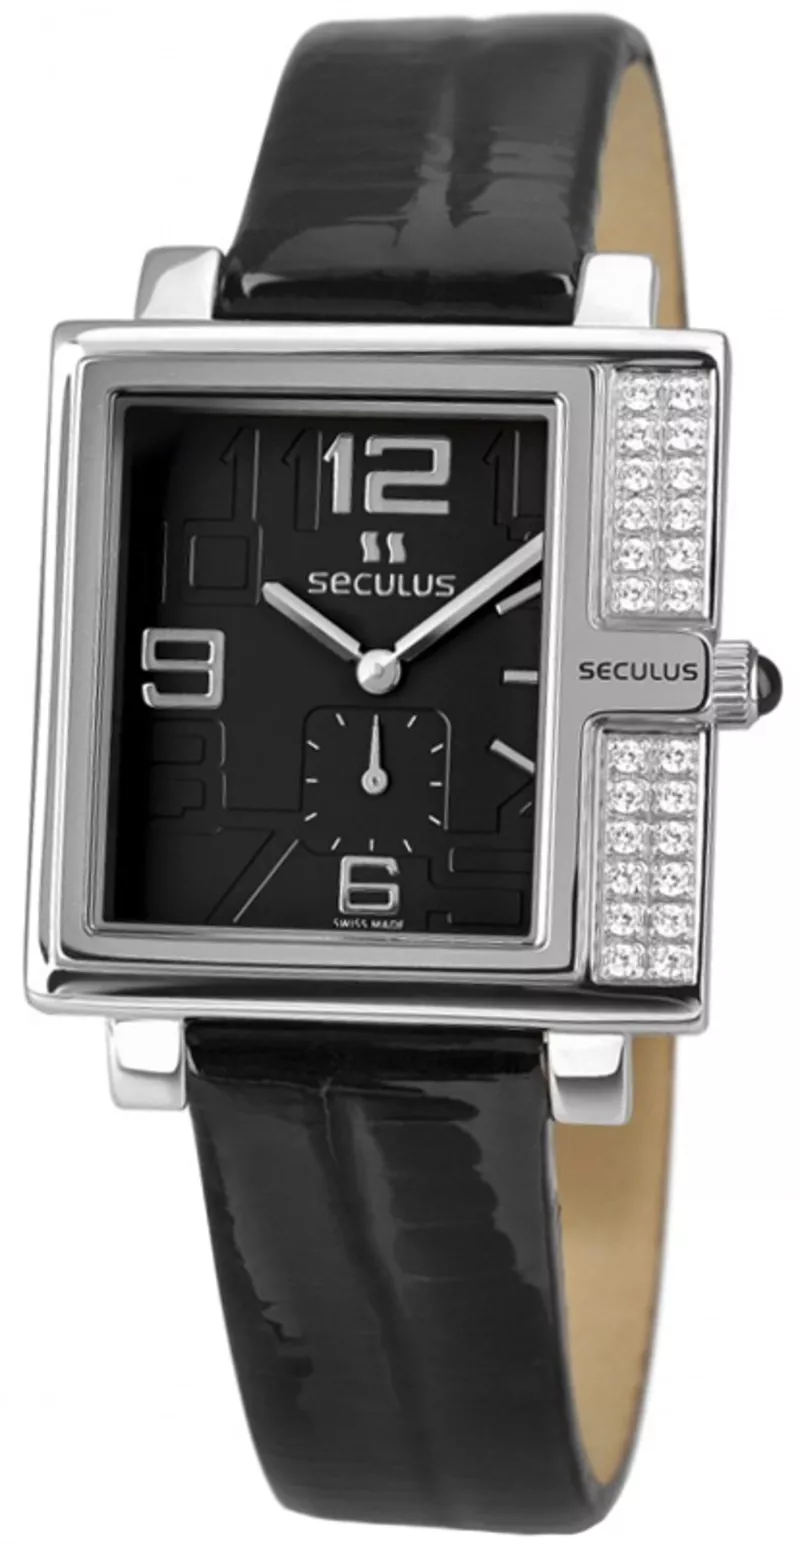 Часы Seculus 1670.2.1064 black, ss-cz, black leather